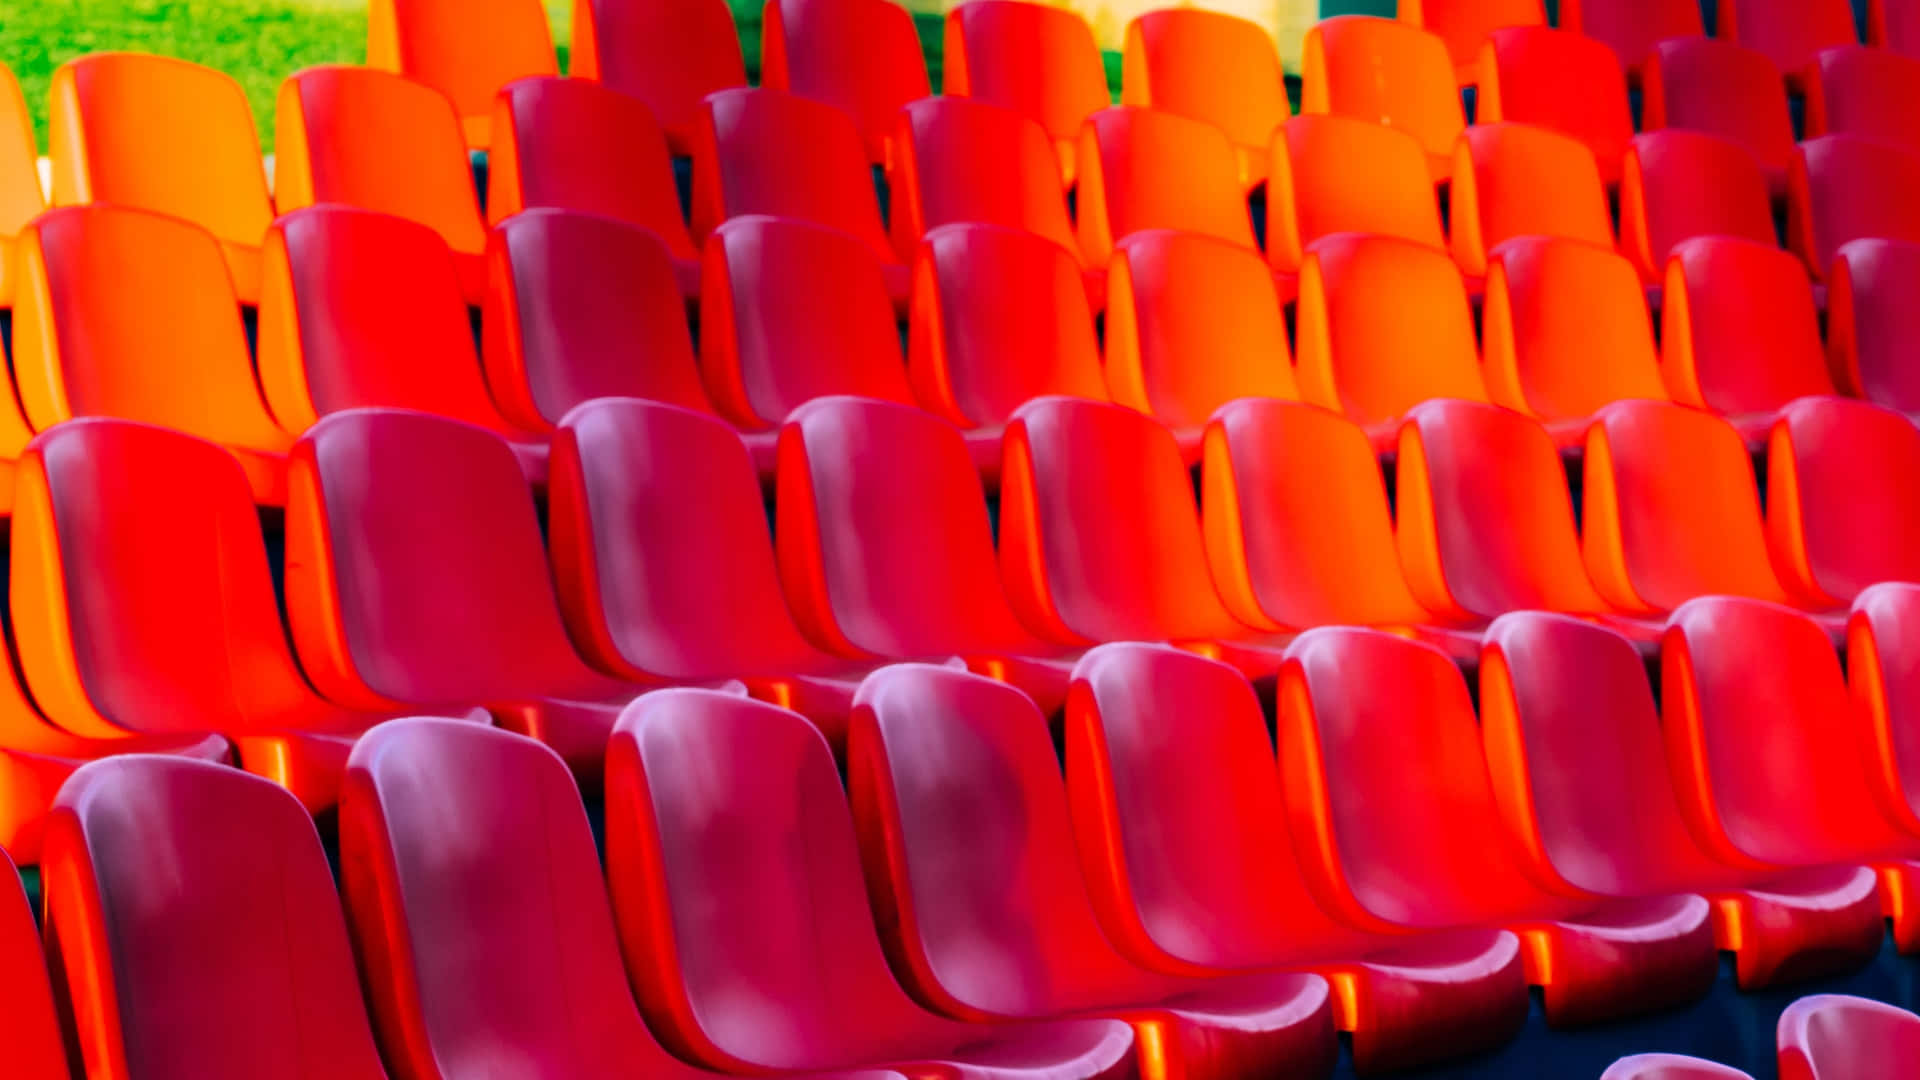 Leerestadionsitze Mit Rotem Farbverlauf Als Hintergrund